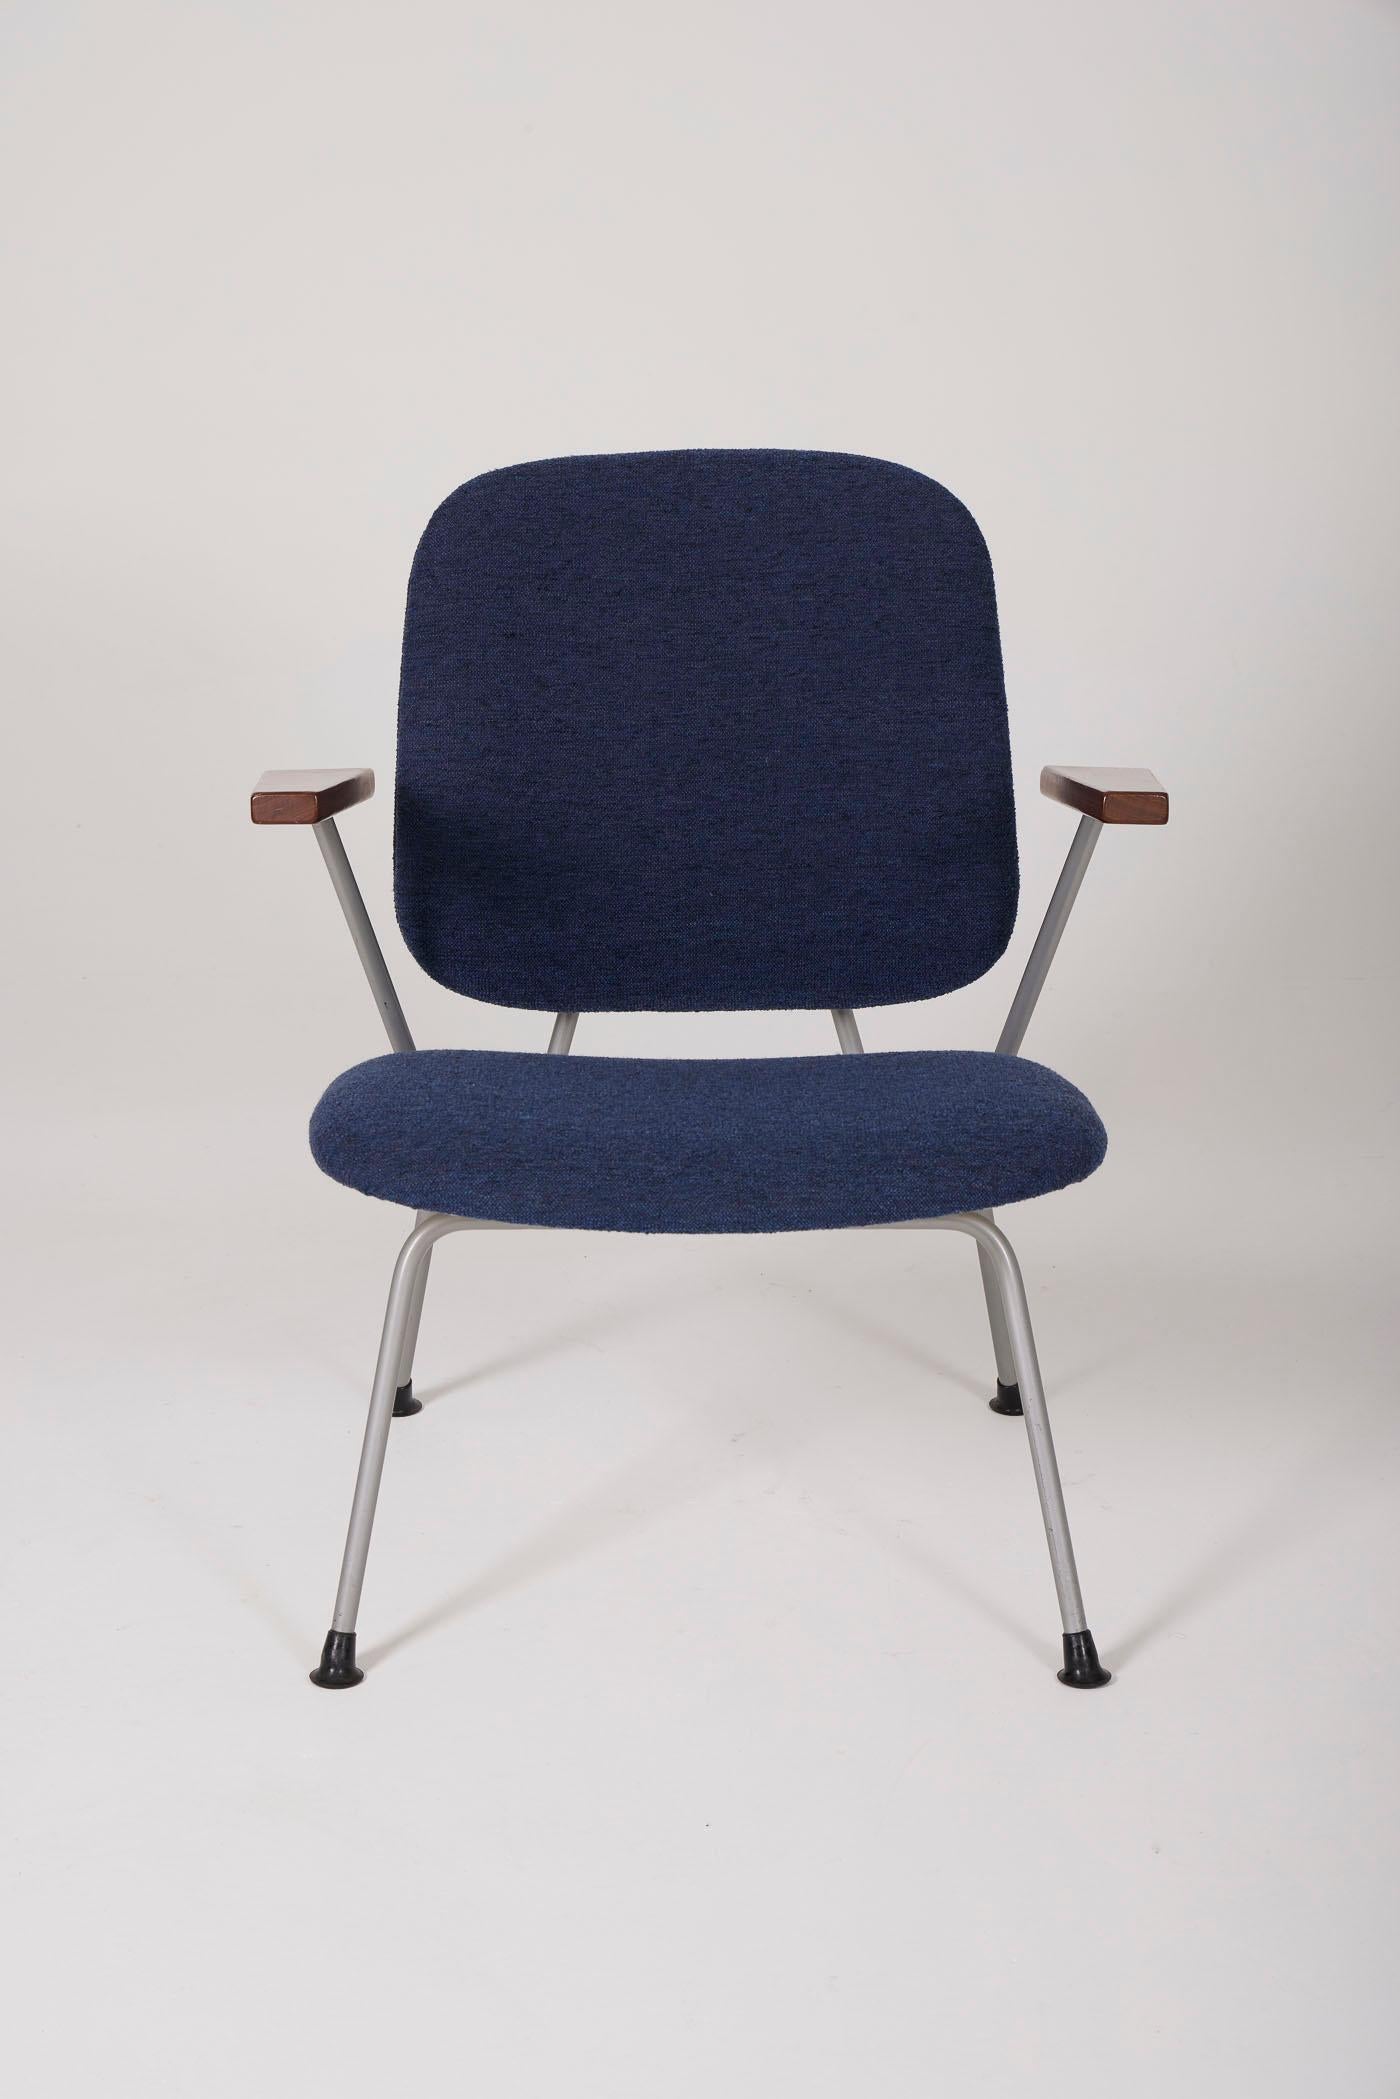 Paire de fauteuils du designer néerlandais Willem Hendrik Gispen, années 1950. Les chaises sont tapissées de tissu bleu, avec des accoudoirs en bois et une base en métal laqué gris. En parfait état.
DV442